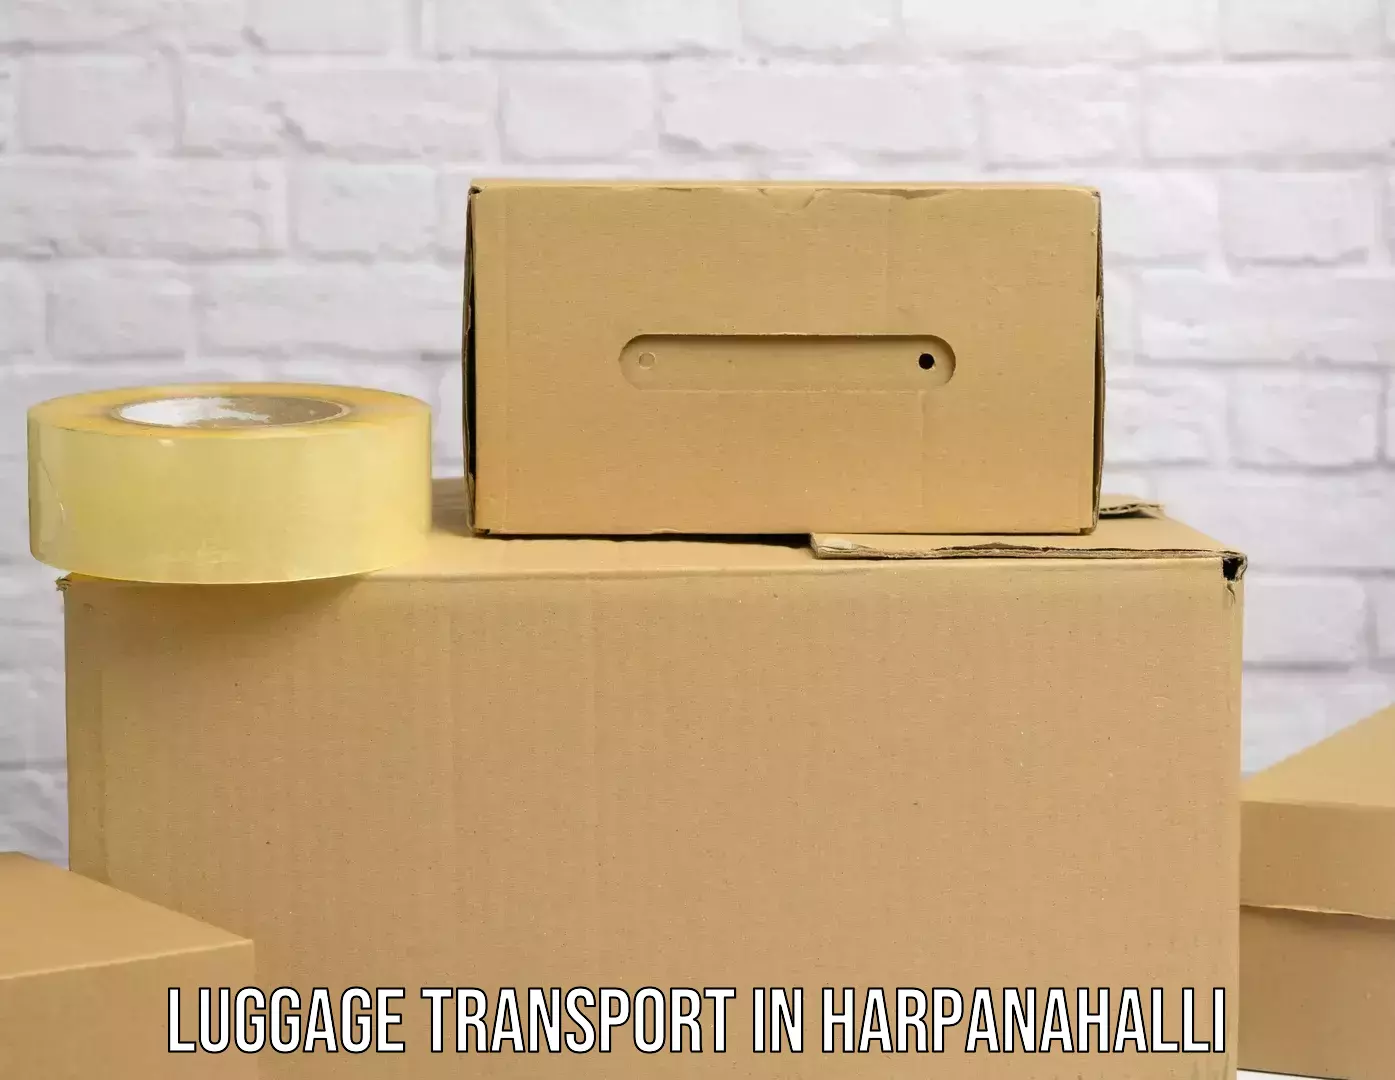 Urgent luggage shipment in Harpanahalli